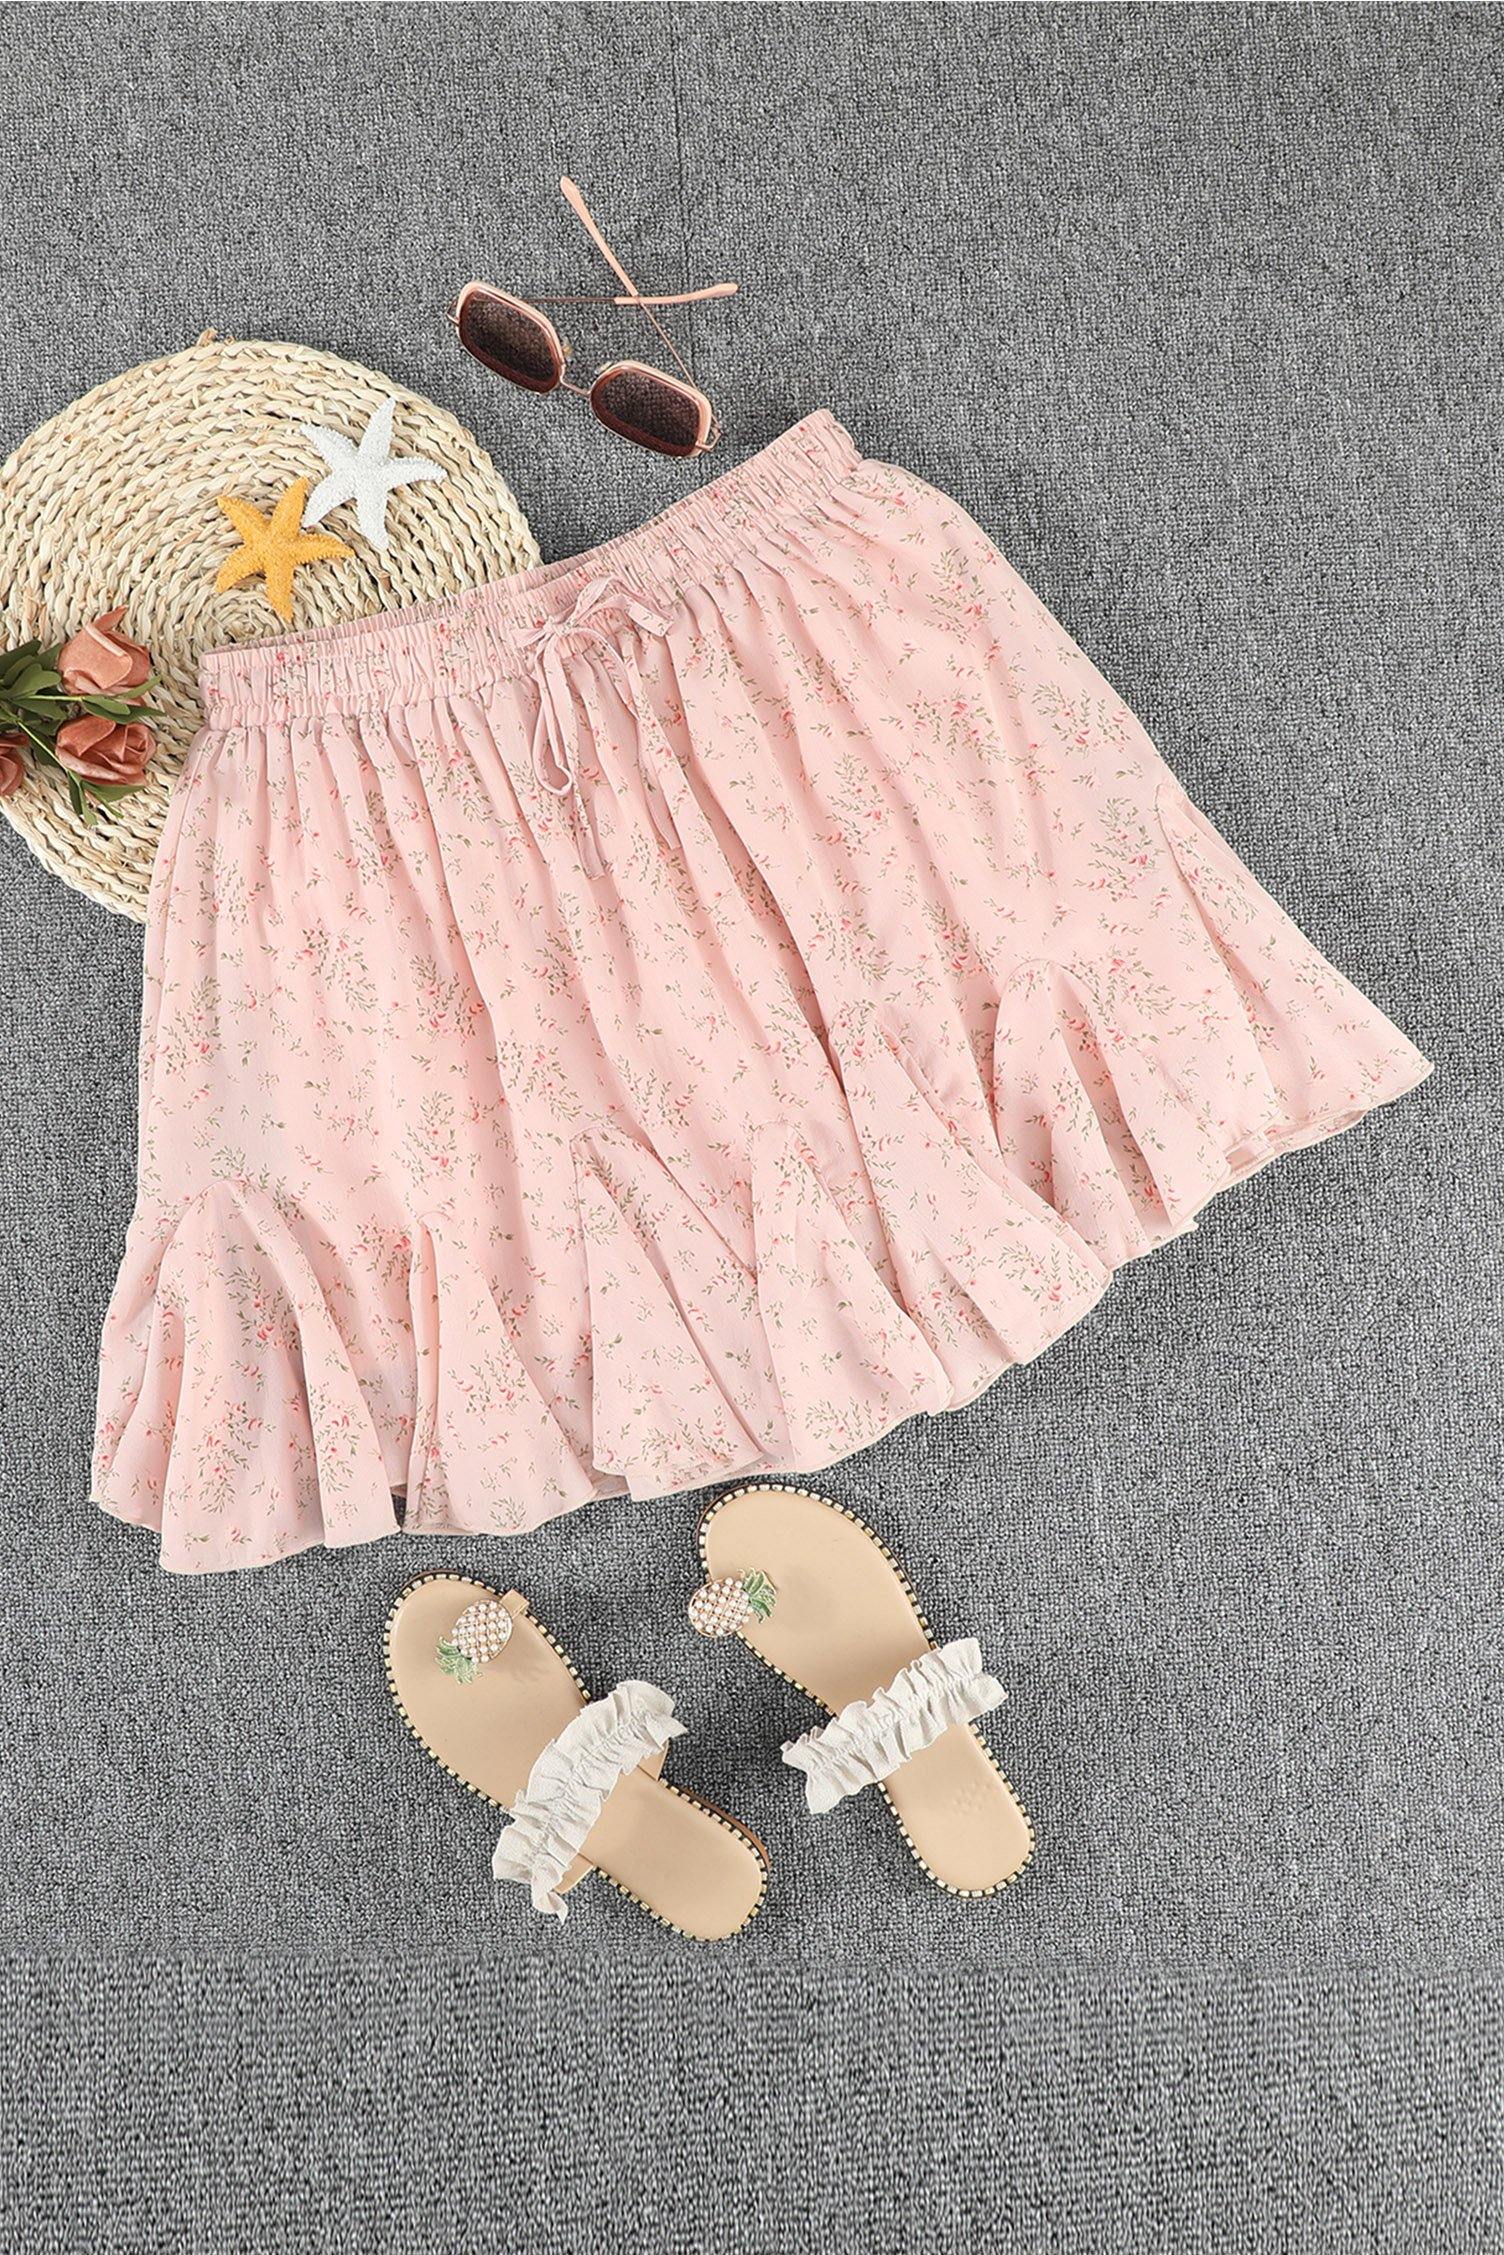 Ruffled Floral Mini Skirt - L & M Kee, LLC